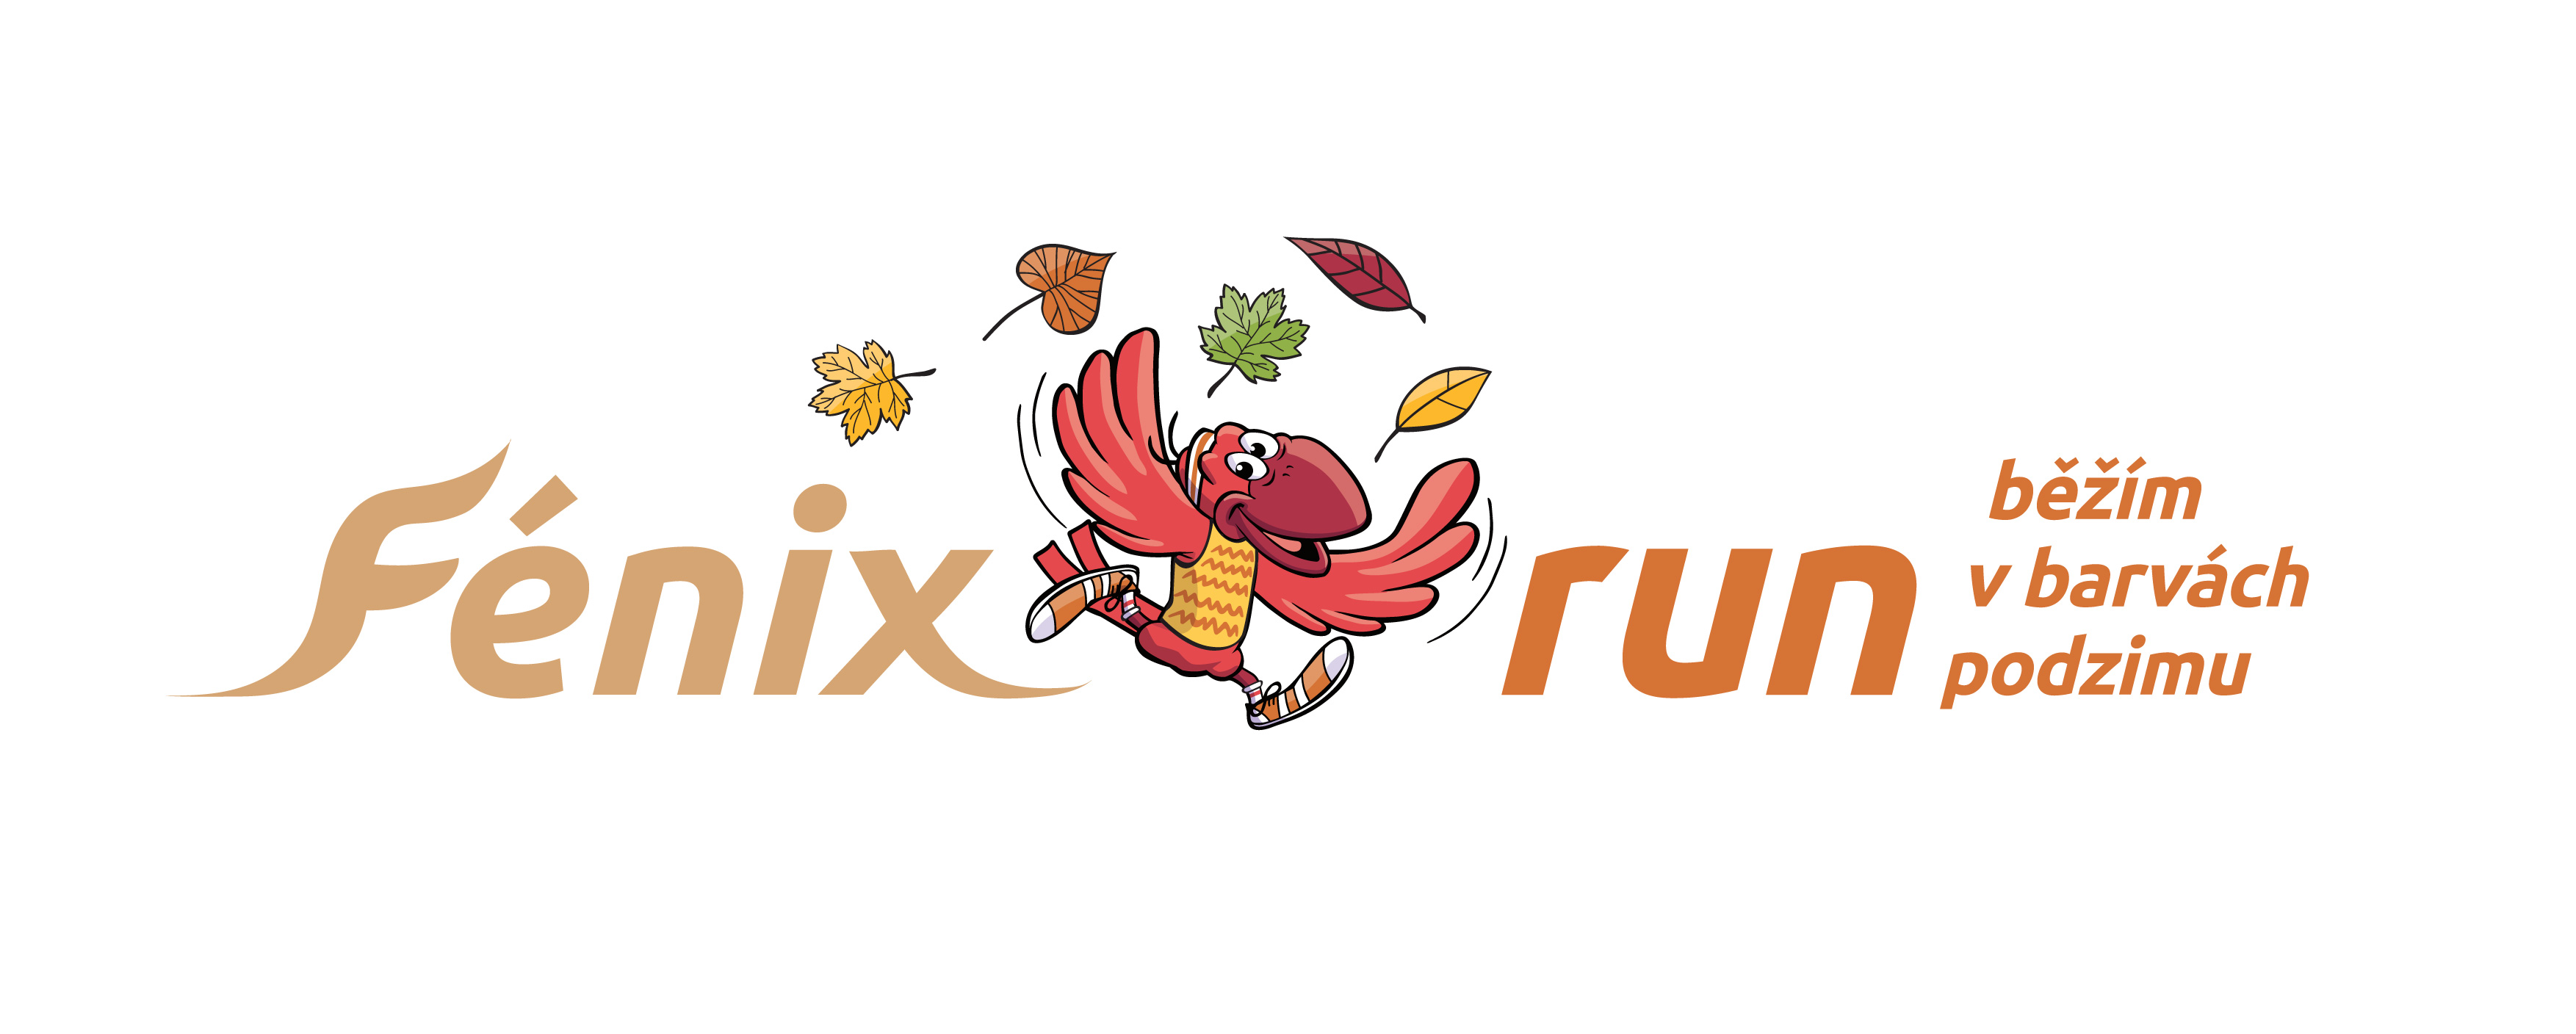 FénixRun Běžím v barvách podzimu